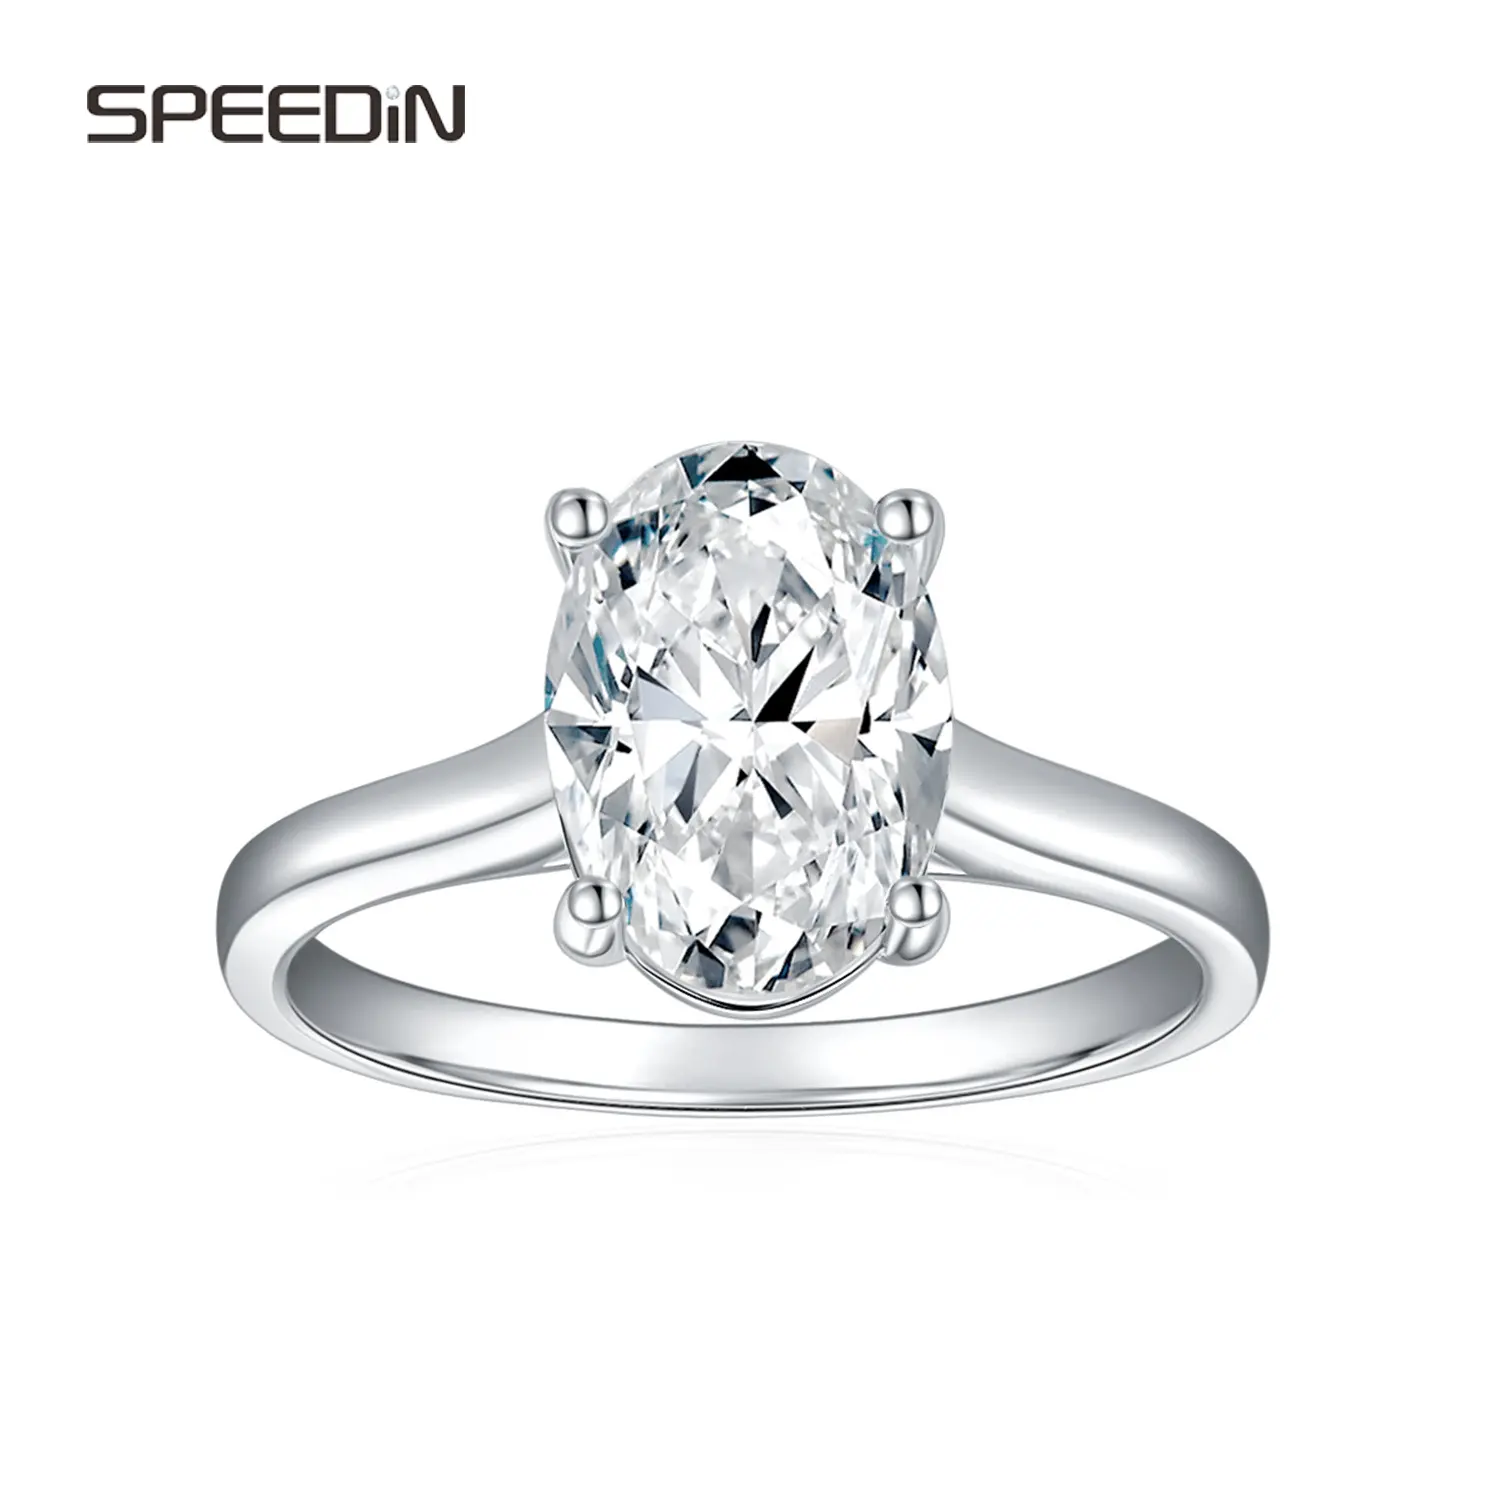 Schmuckhersteller Verlobung Hochzeit Ring Labor Diamant Individuelles Schmuck Individueller Ring Valentinstag Geschenk Diamantring